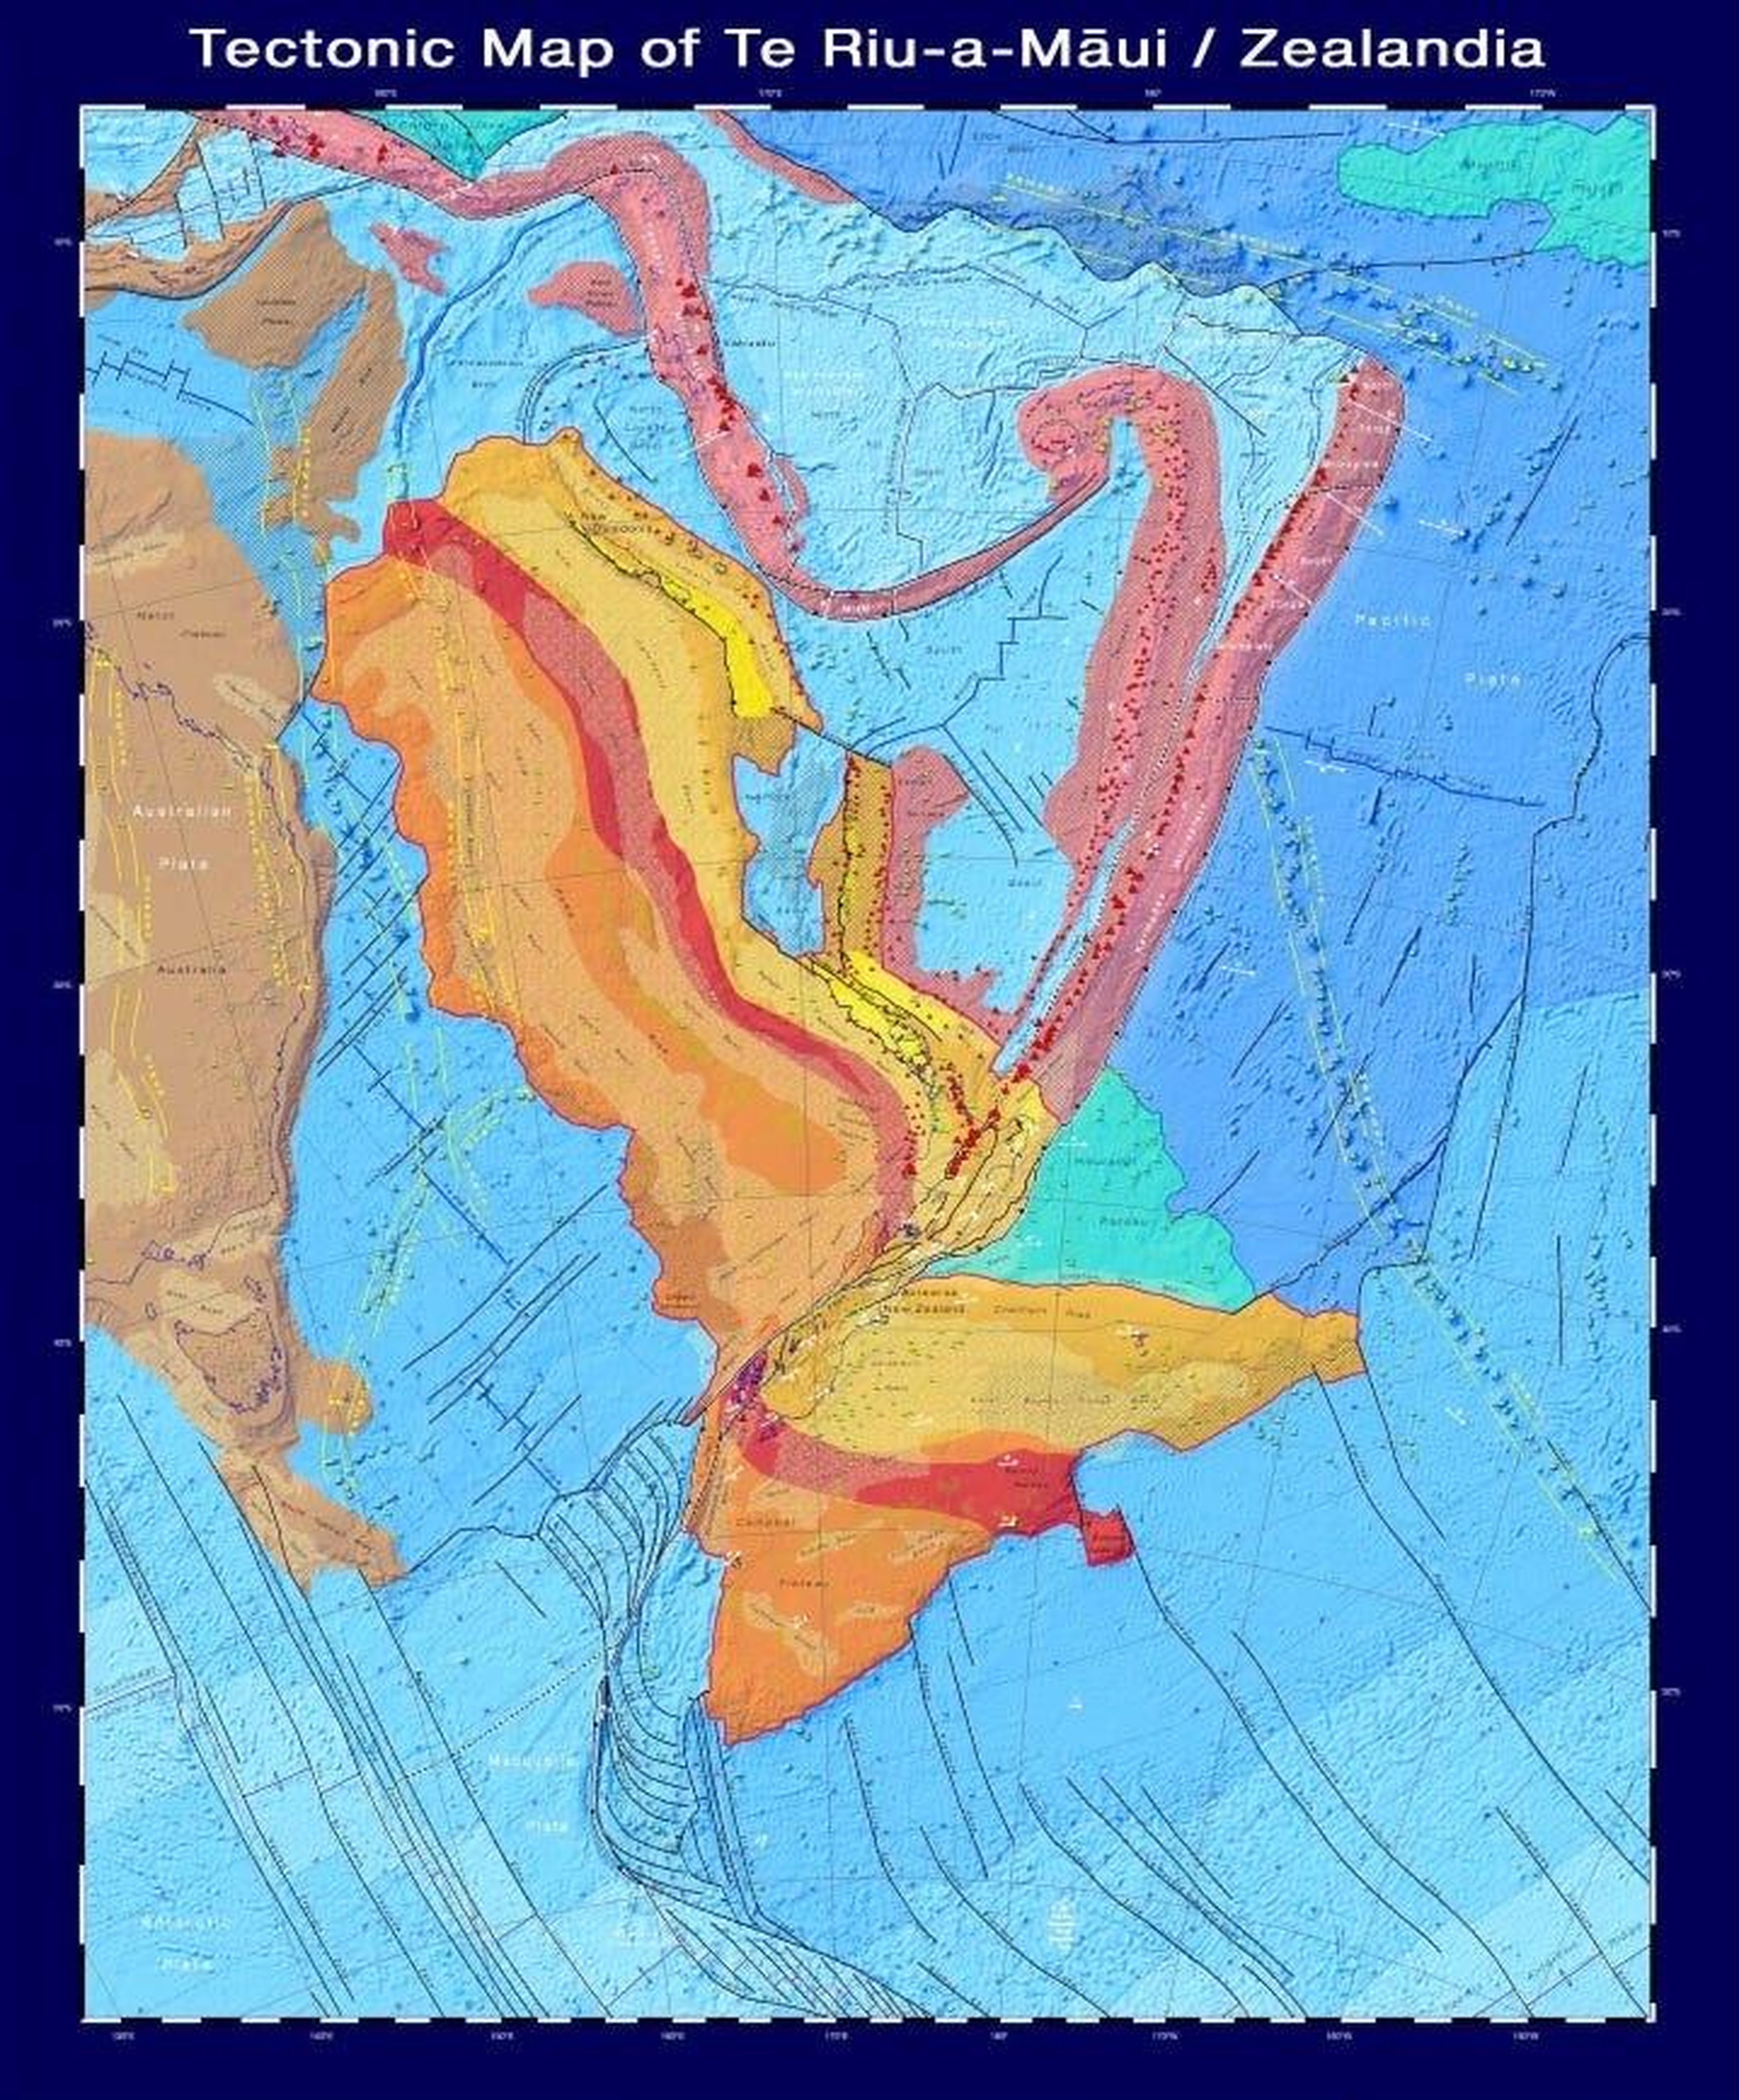 Un mapa tectónico de Zealandia, que muestra los tipos y la edad de la corteza, las fallas principales y los volcanes que conforman el continente.